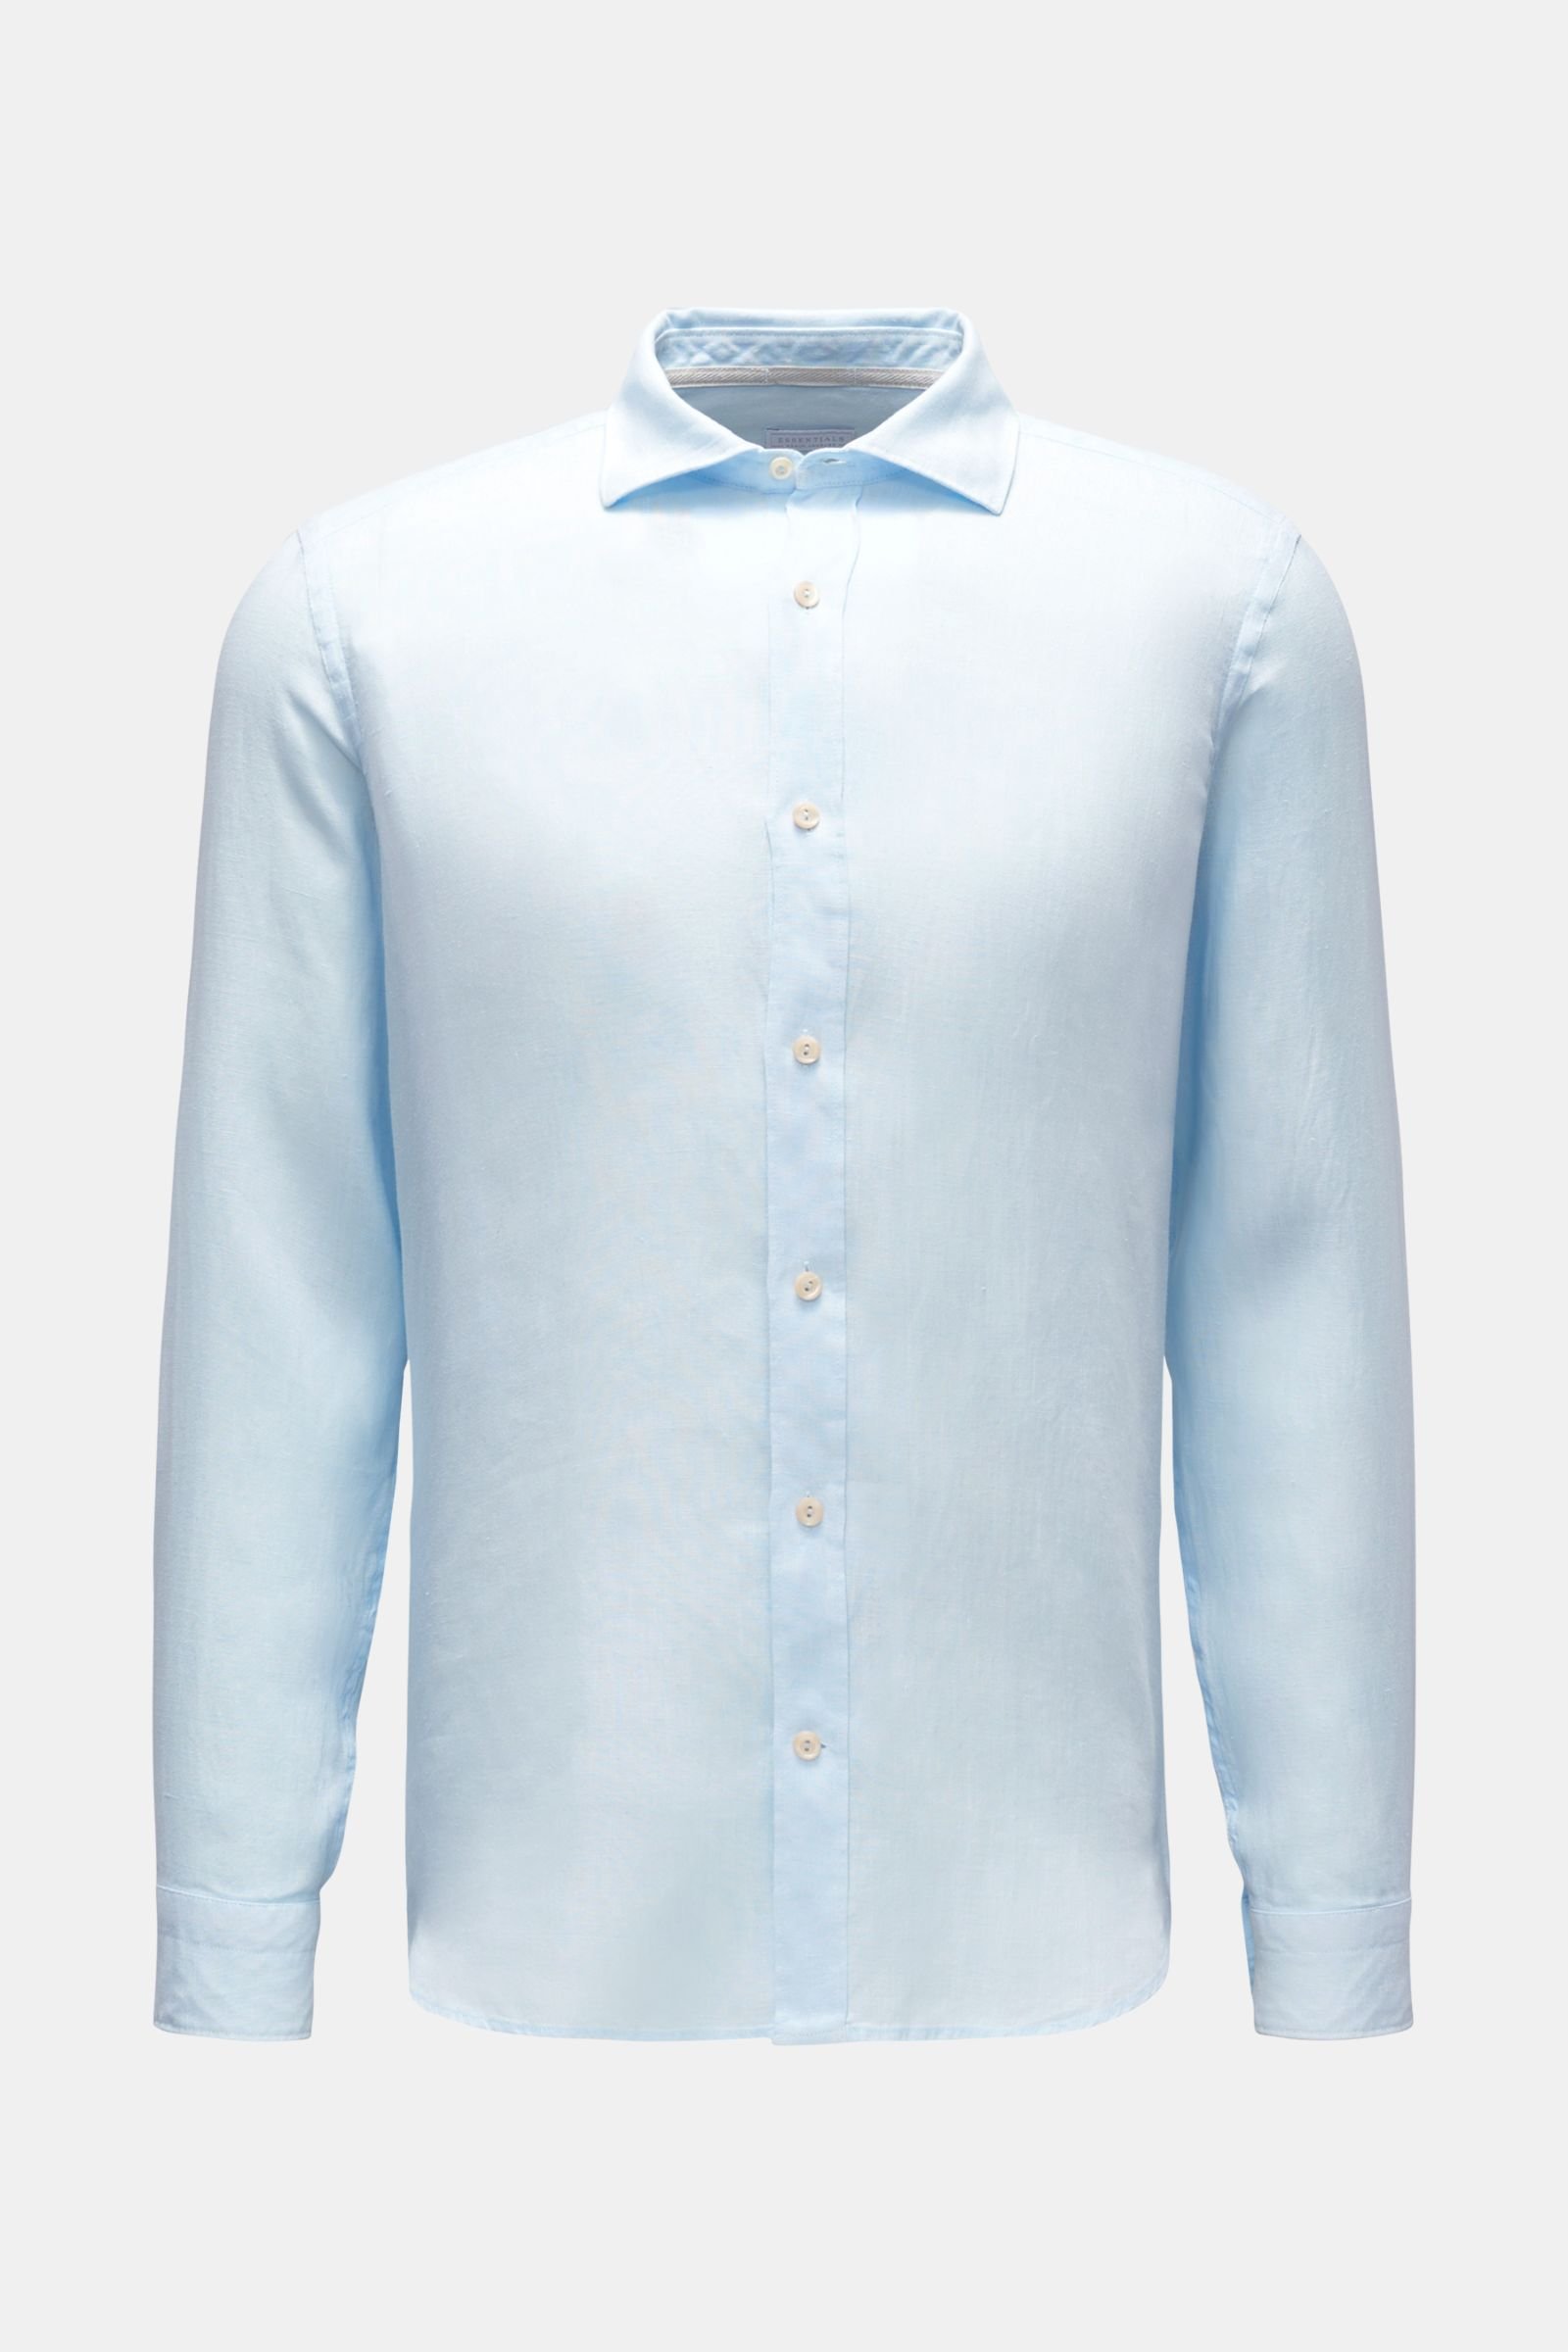 Linen shirt shark collar pastel blue